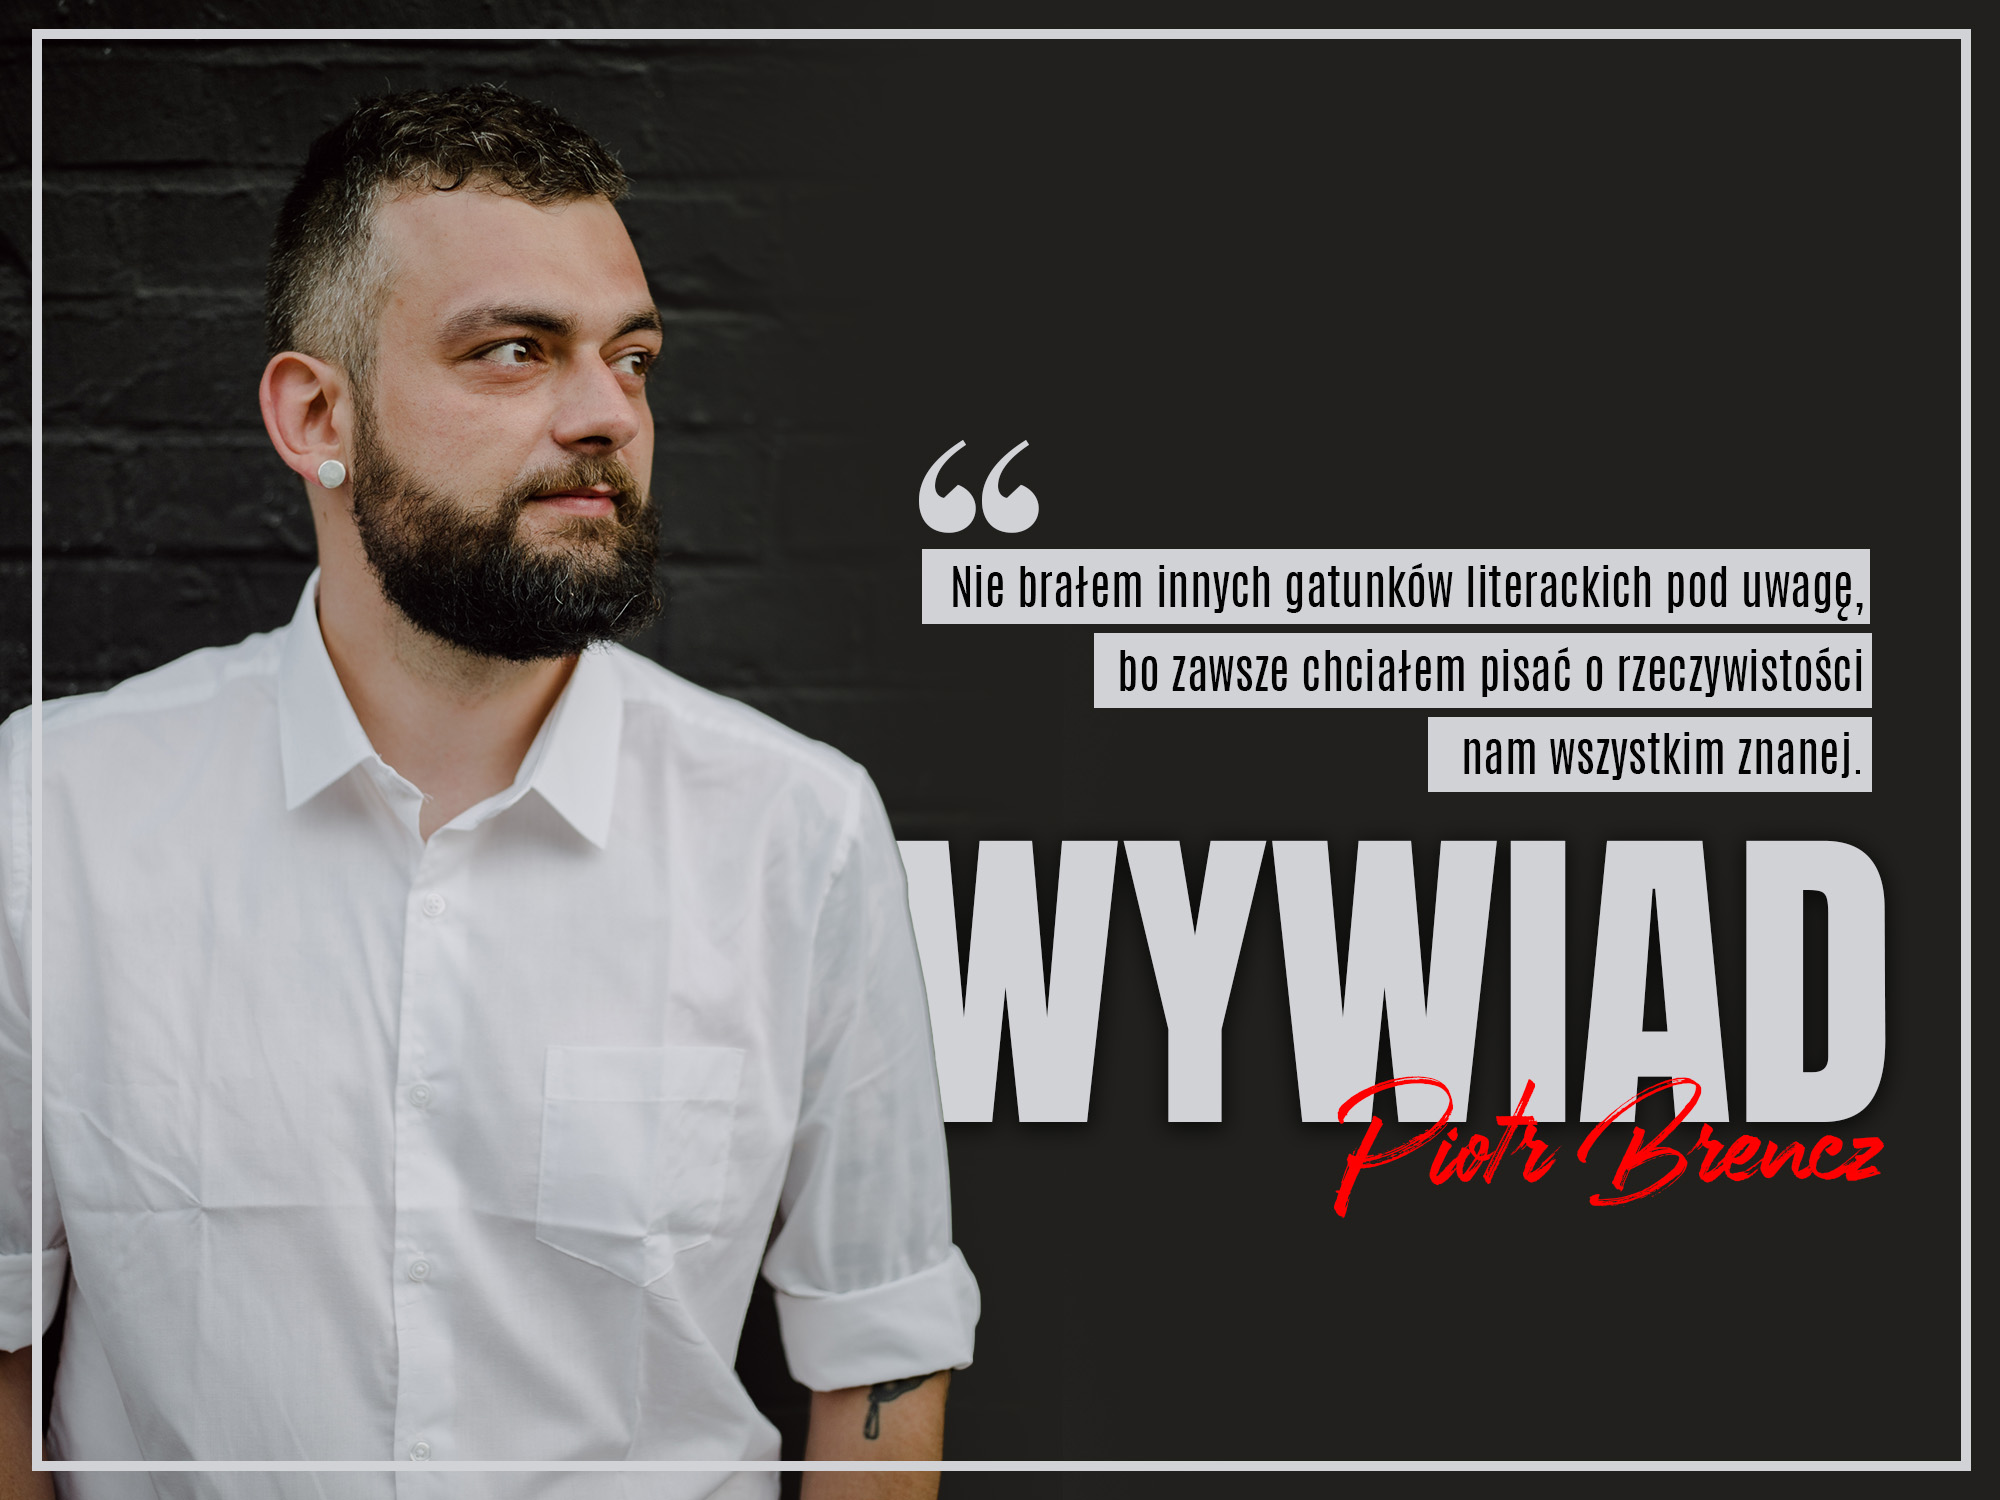 Wywiad - Piotr Brencz - Zaczytanyksiazkoholik.pl